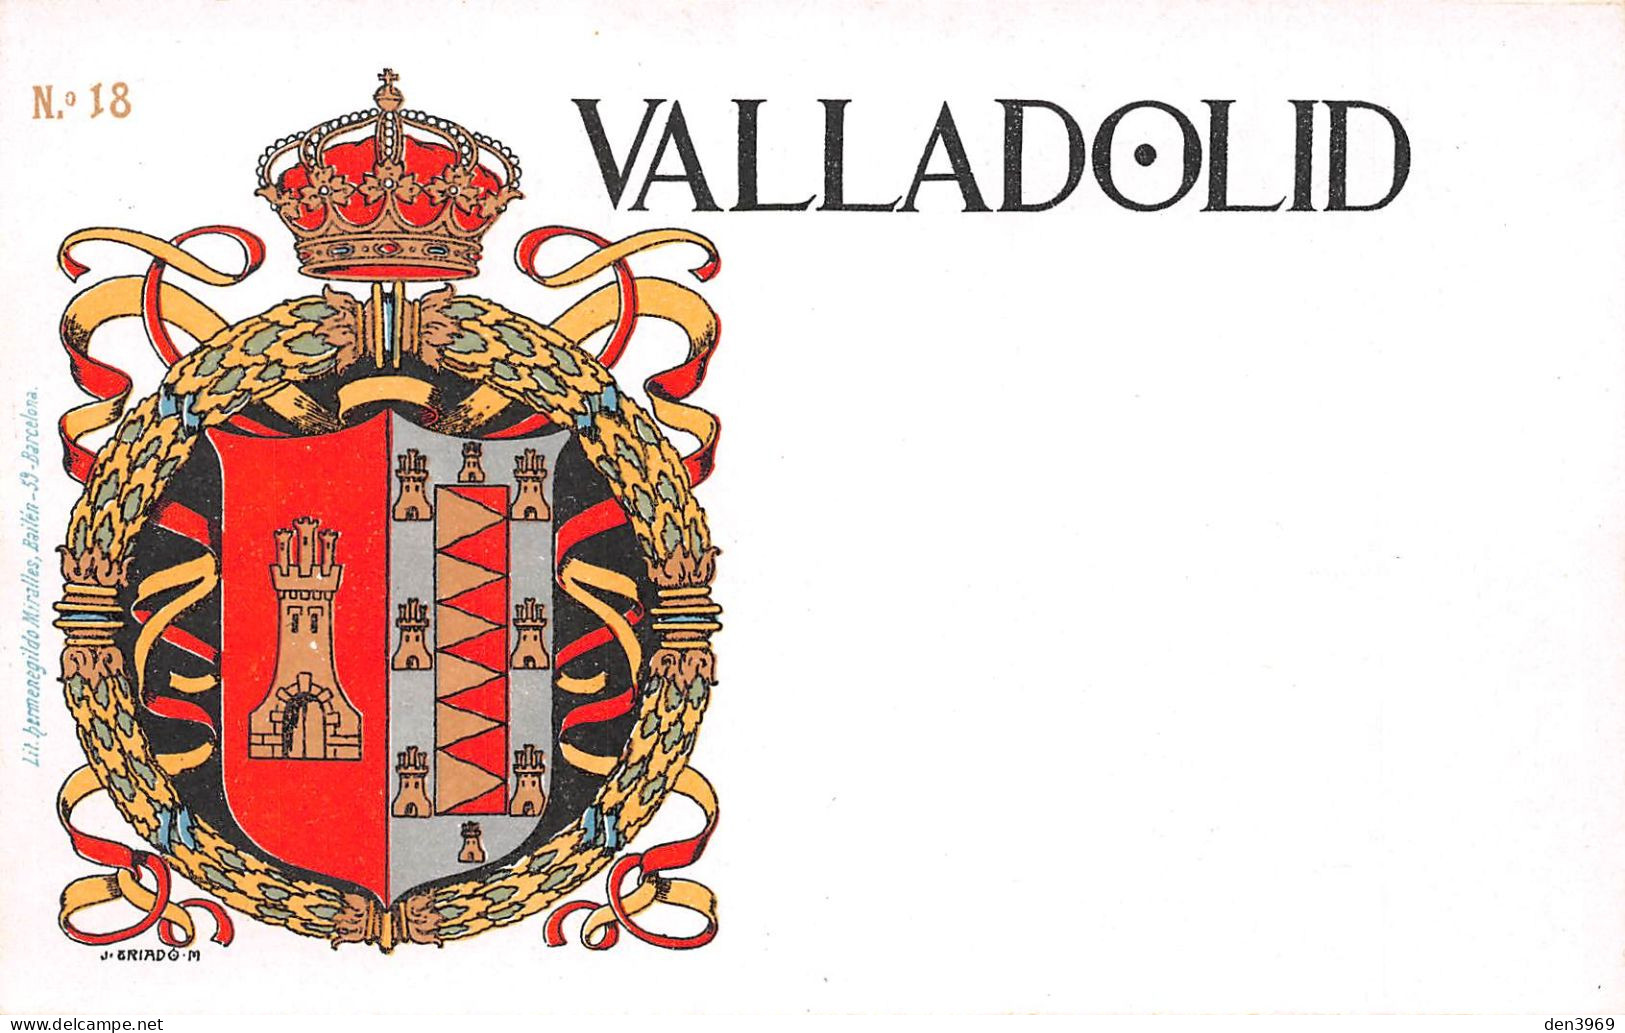 Espagne - VALLADOLID Par Eriado - Escudo De Armas, Armoiries - Lith. Hermenegildo Miralles, Barcelona N'18 - Précurseur - Valladolid